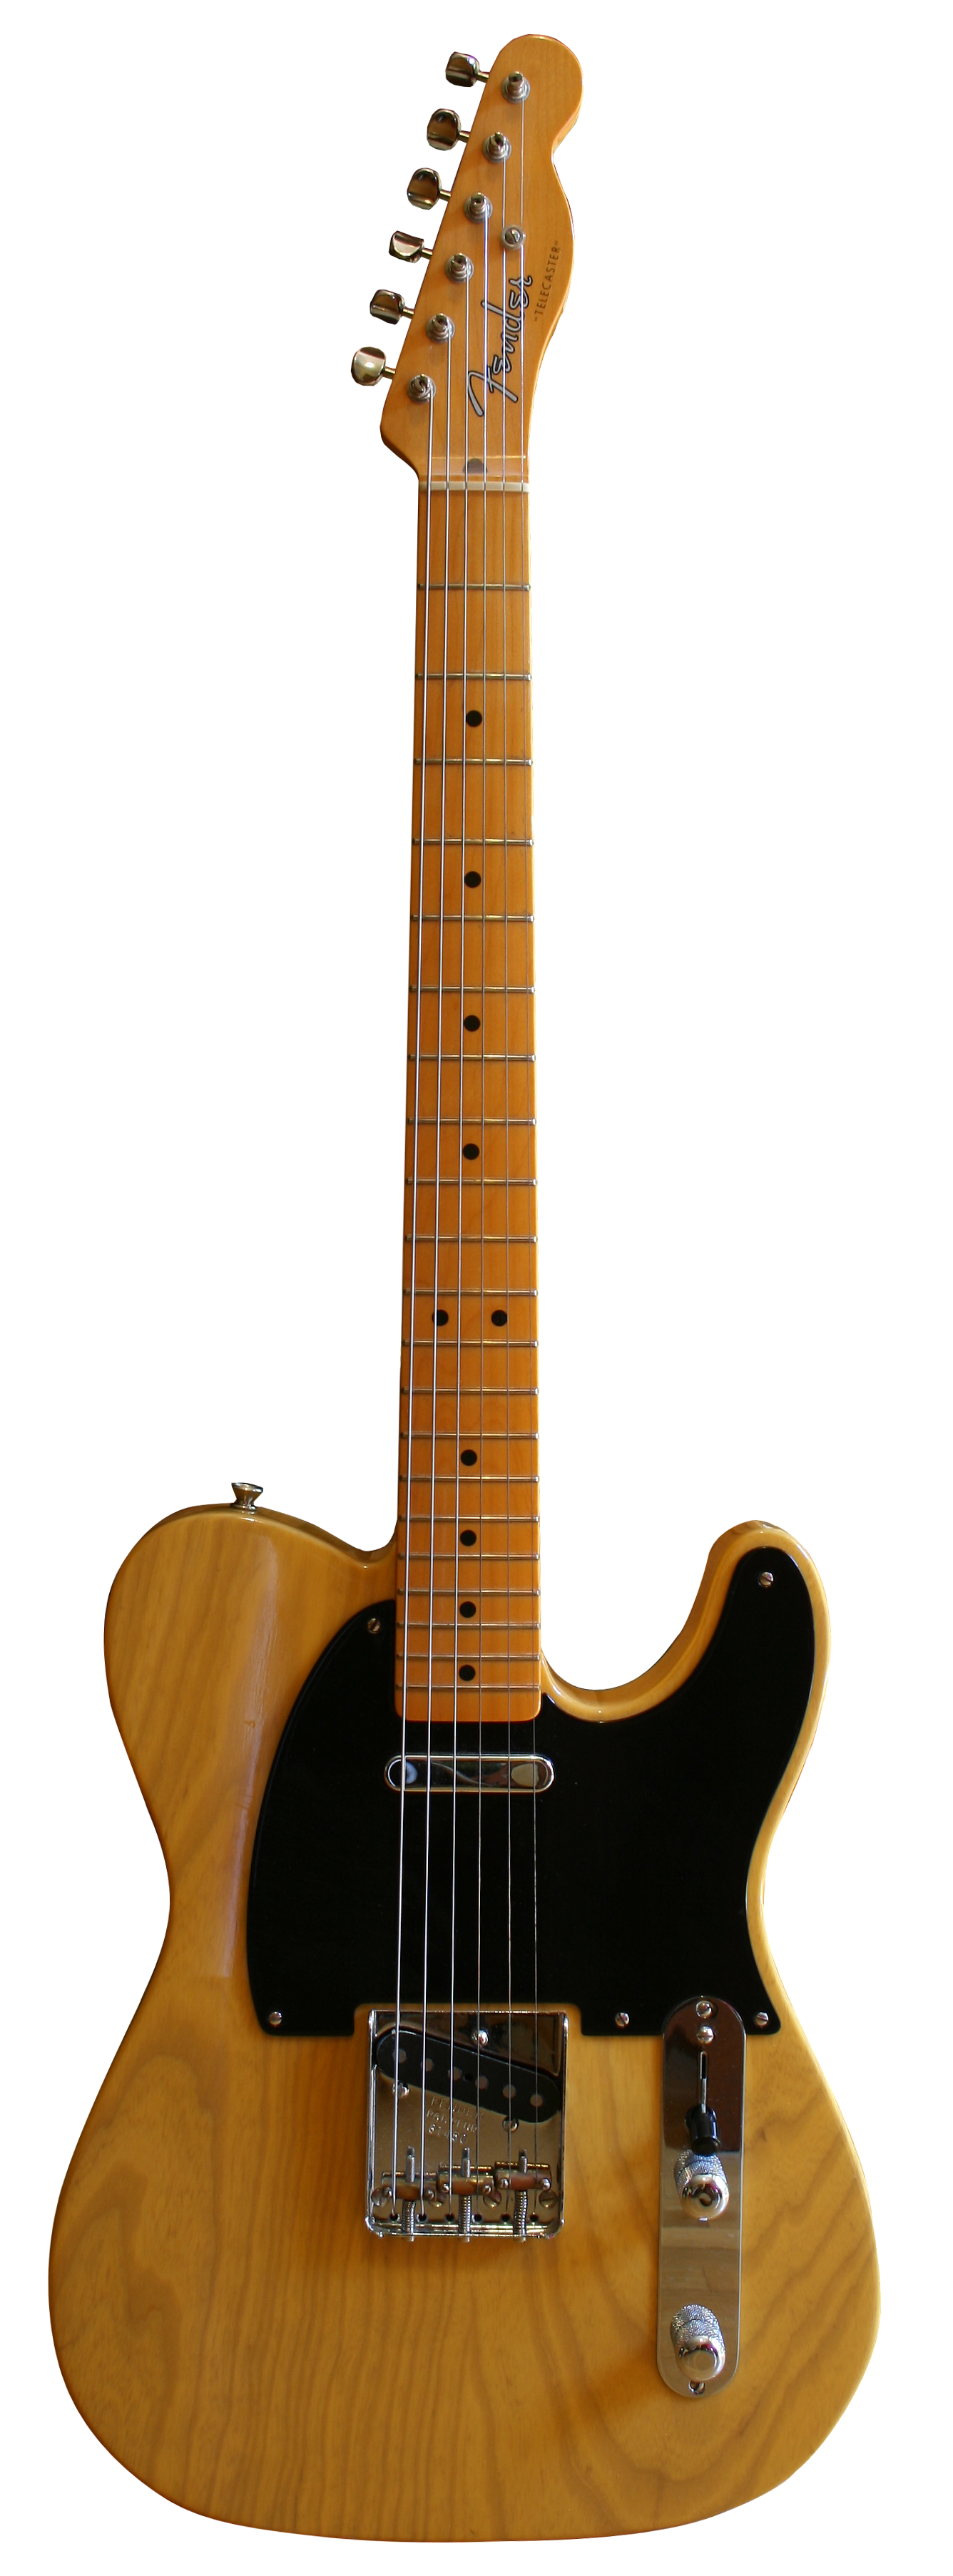 File:Fender Telecaster Americ